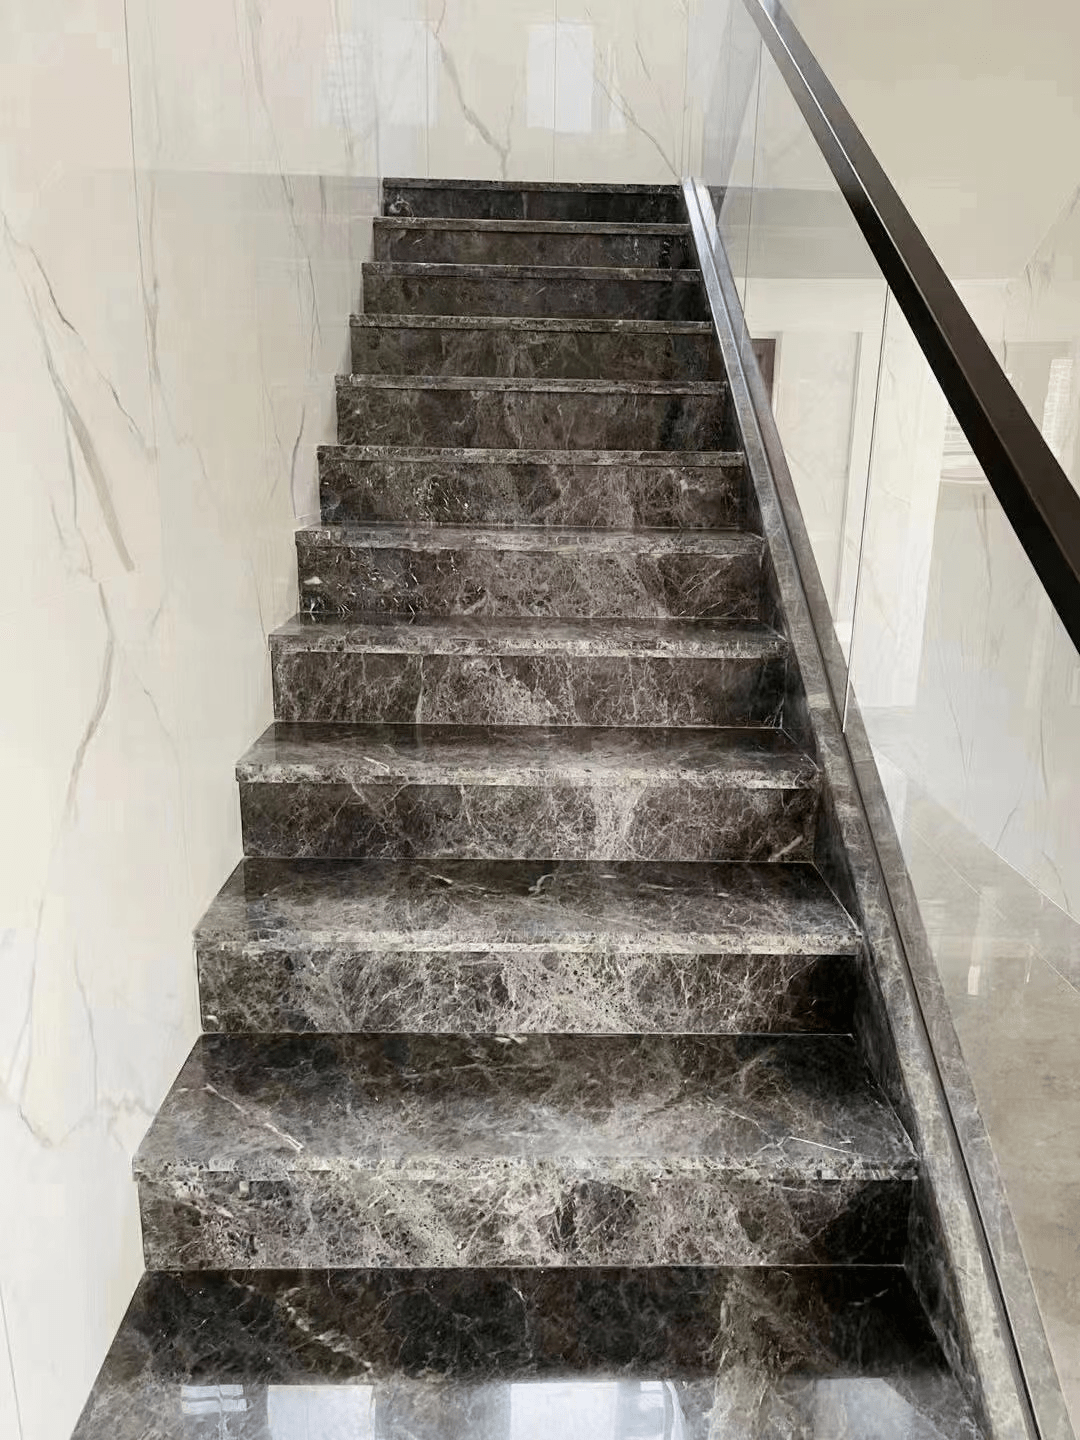 大理石楼梯,楼梯界的颜值担当